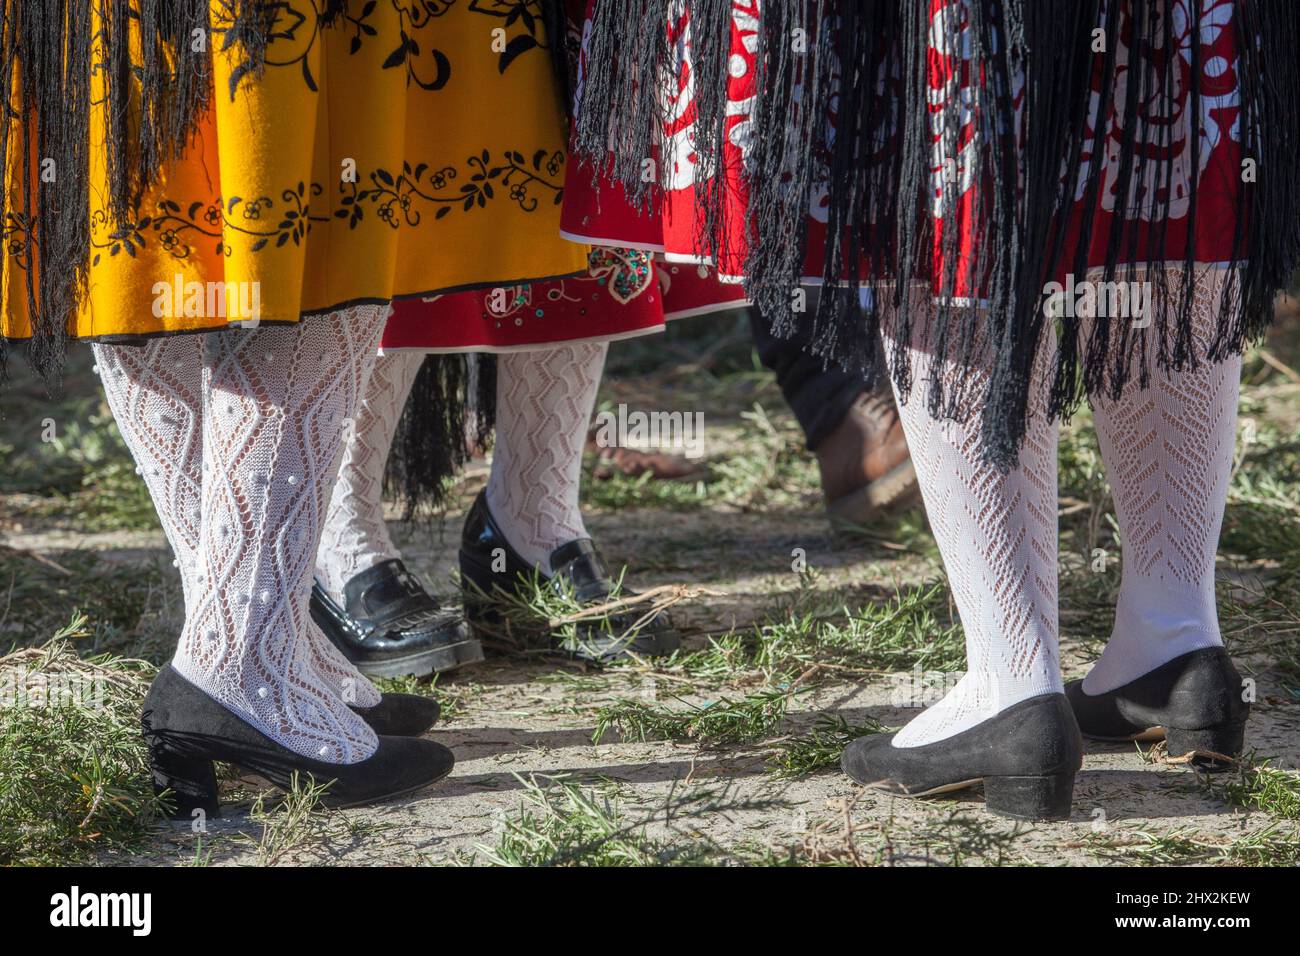 Caceres, Espagne - 20th janvier 2022: Femmes portant une robe extremienne traditionnelle. Jupe, collants pointelle et chaussures. Acehuche, Caceres, Espagne. Banque D'Images